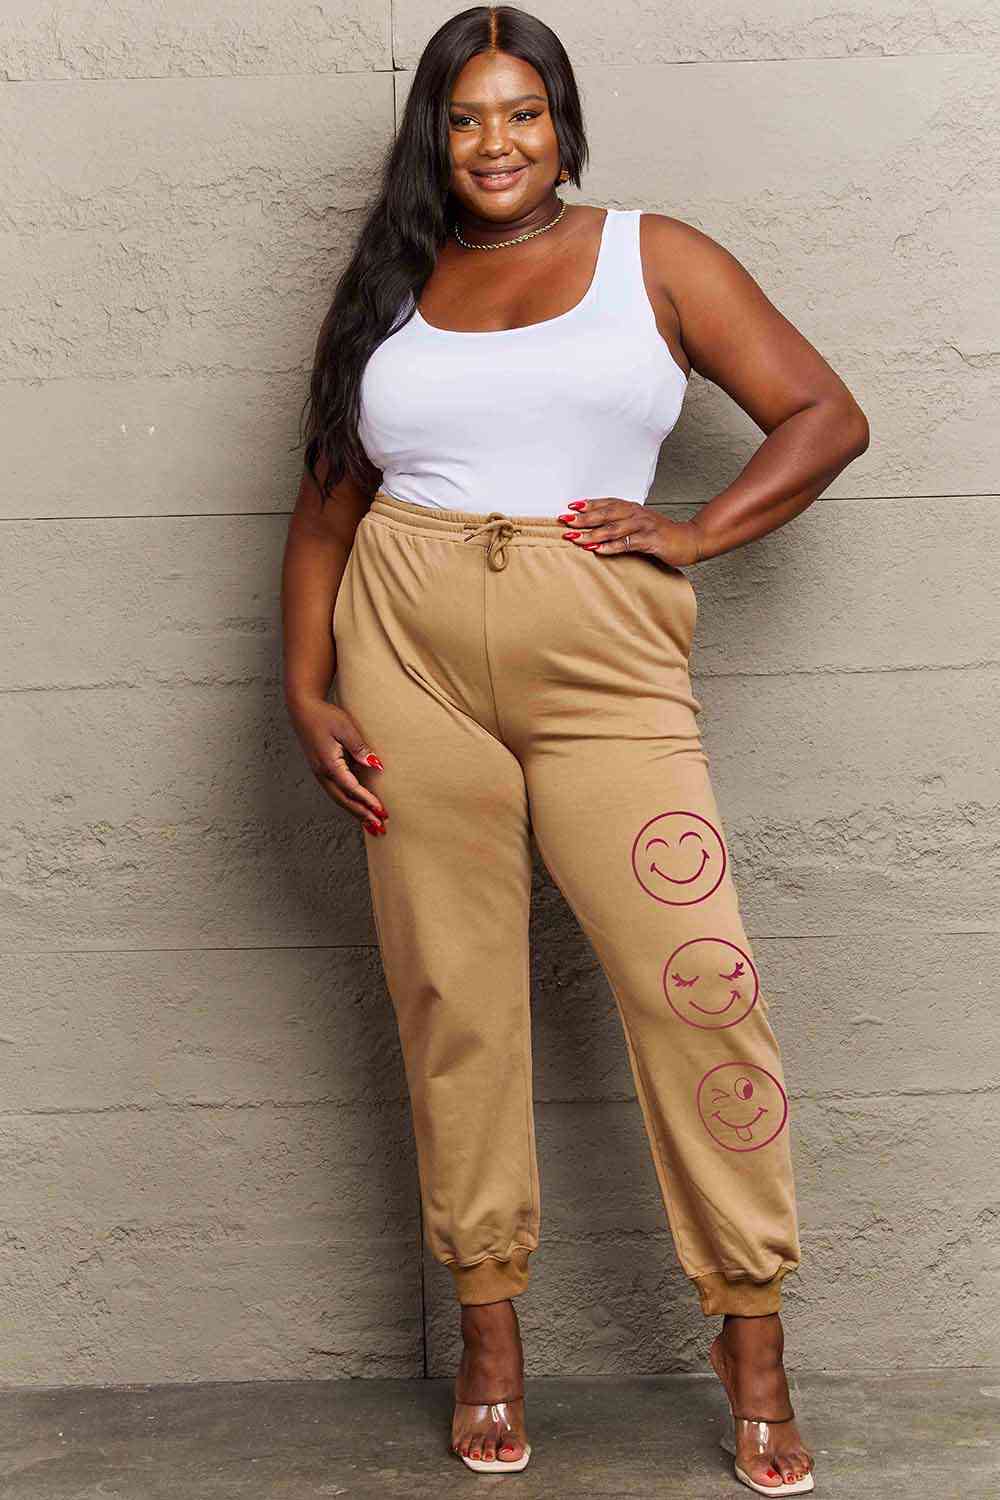 Pantalones deportivos con estampado de emoji de tamaño completo de Simply Love